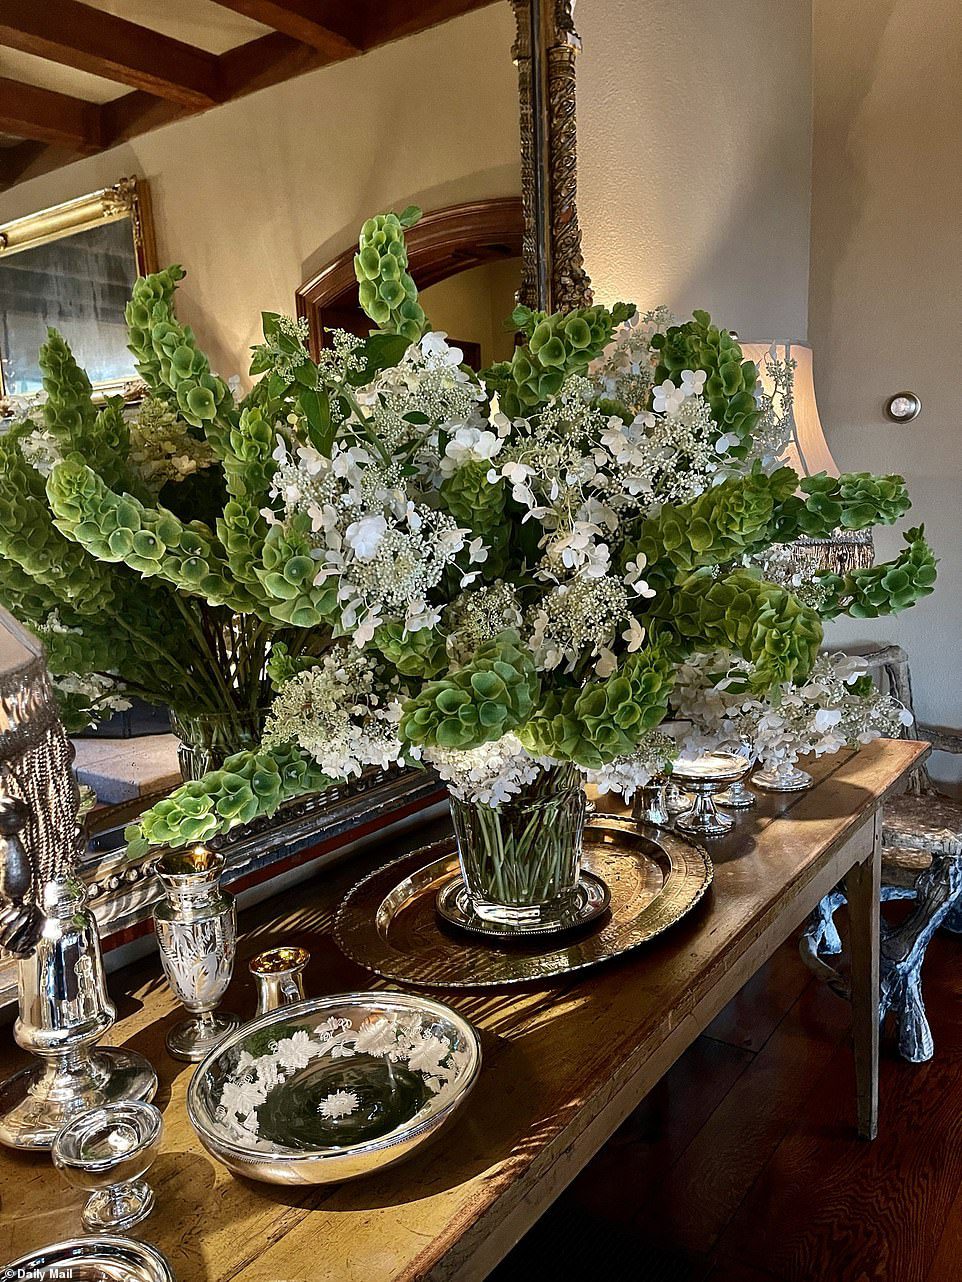 Menakjubkan: Tokoh TV mengungkapkan bahwa sahabatnya Kevin Sharkey membuat rangkaian bunga besar untuk rumahnya dengan bunga dari kebunnya, termasuk hydrangea, snapdragons, delilies dan lili.